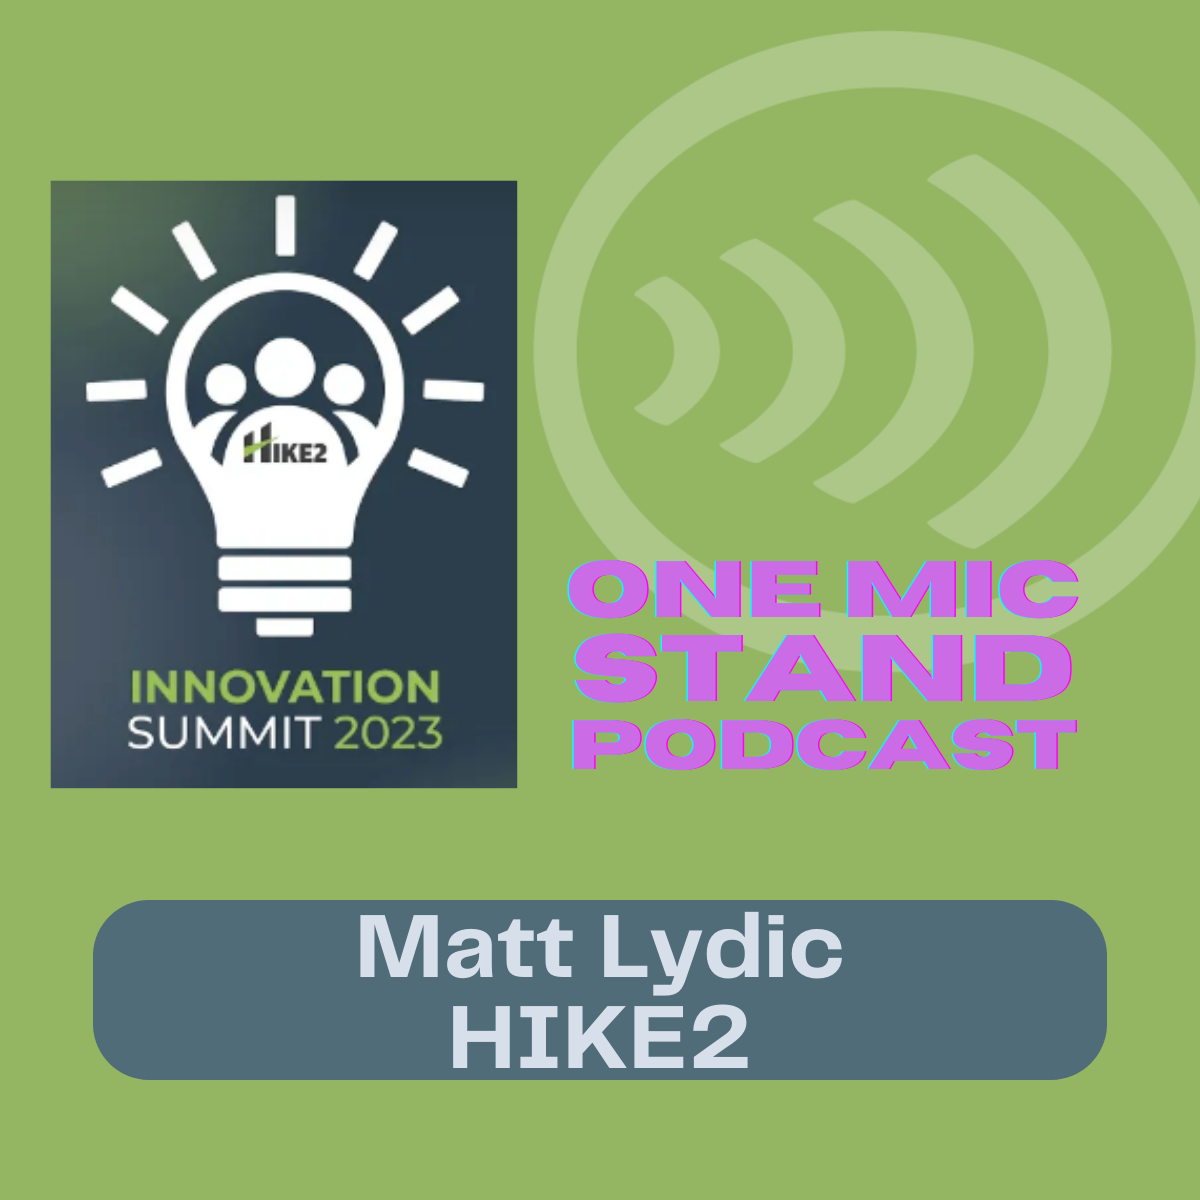 Hike2 Innovation Summit